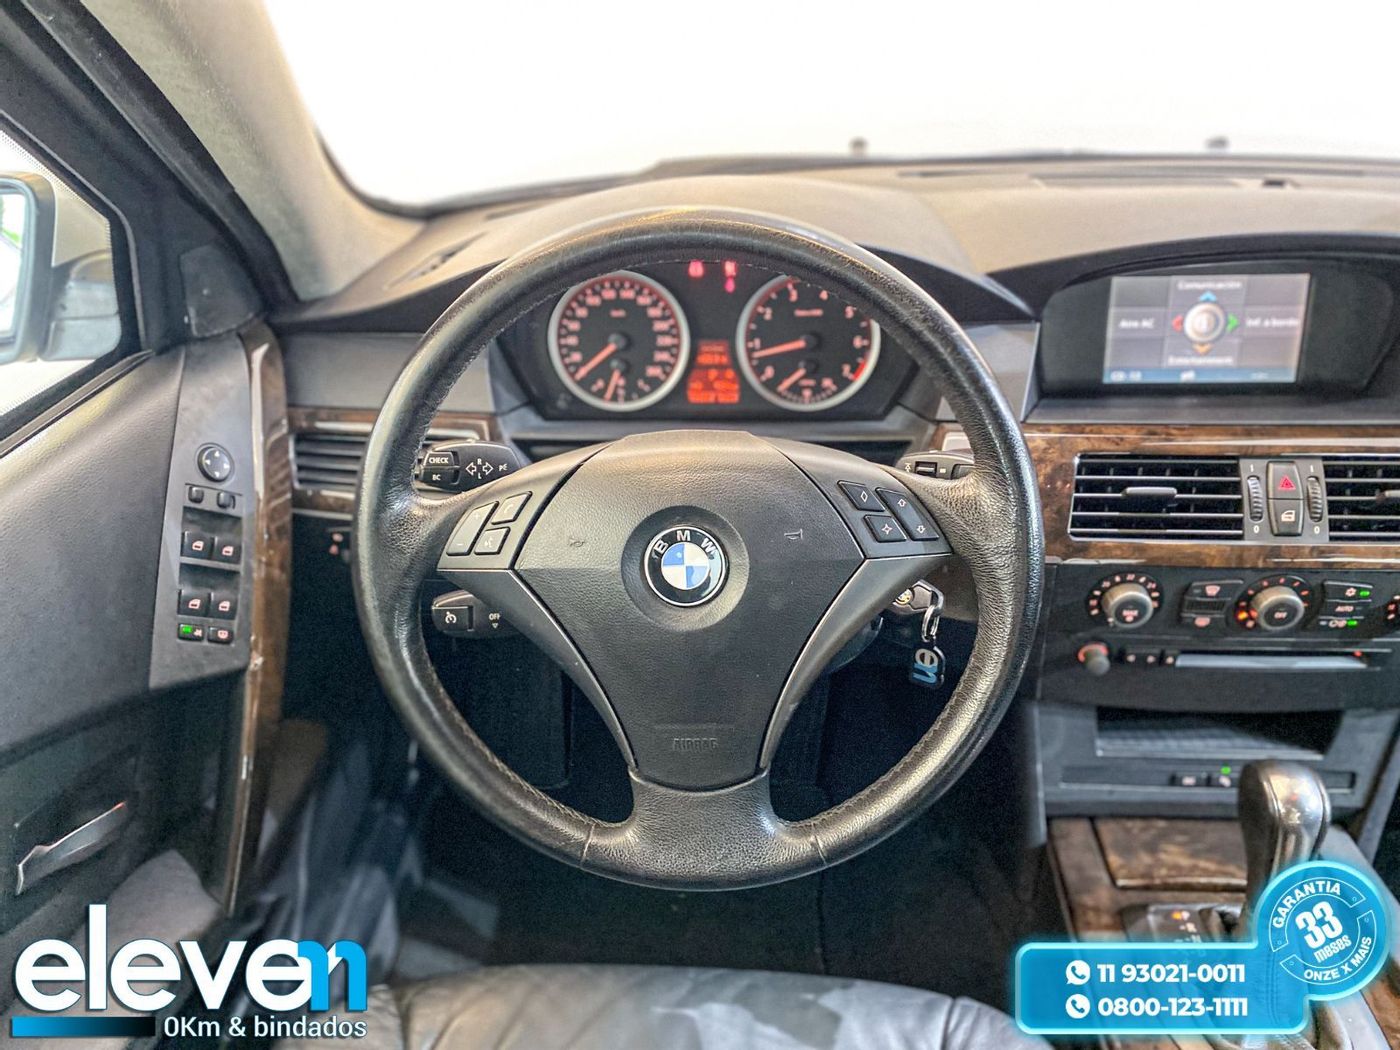 BMW 545iA 4.4 32V V8 333cv